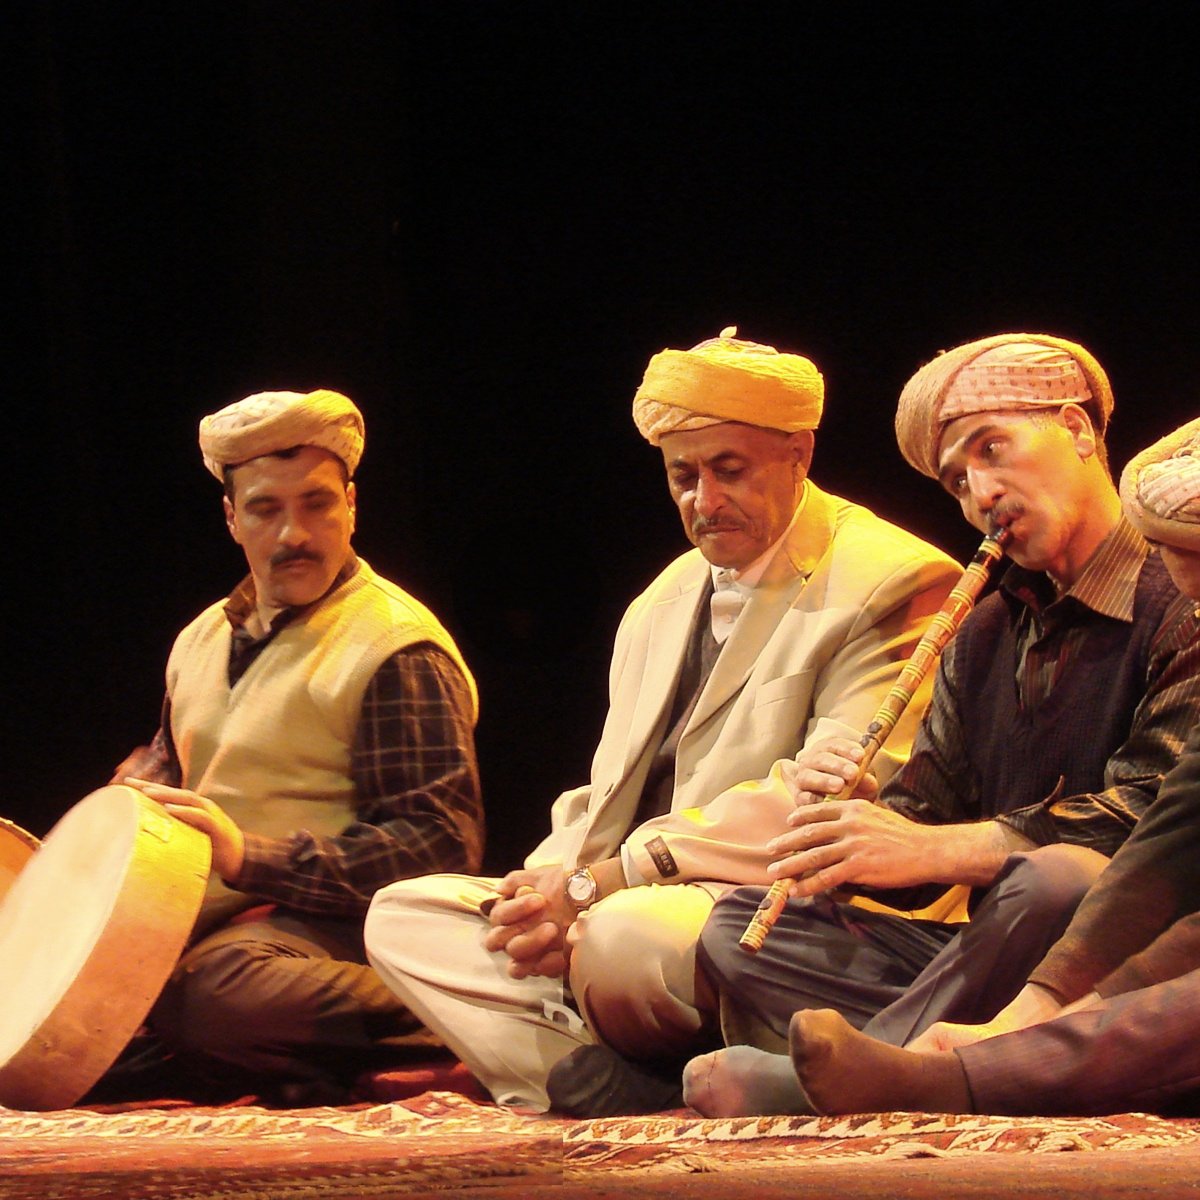 D'abord il faut savoir que la musique algerienne a l'ouest etait tres influencee par la poesie arabe bedouine, accompagnee de guesba (flute), traitant de themes tres varies.Le pionnier de ce style etait Cheikh Abdelkader El-Khaldi, lui qui etait tres influence par le melhoun